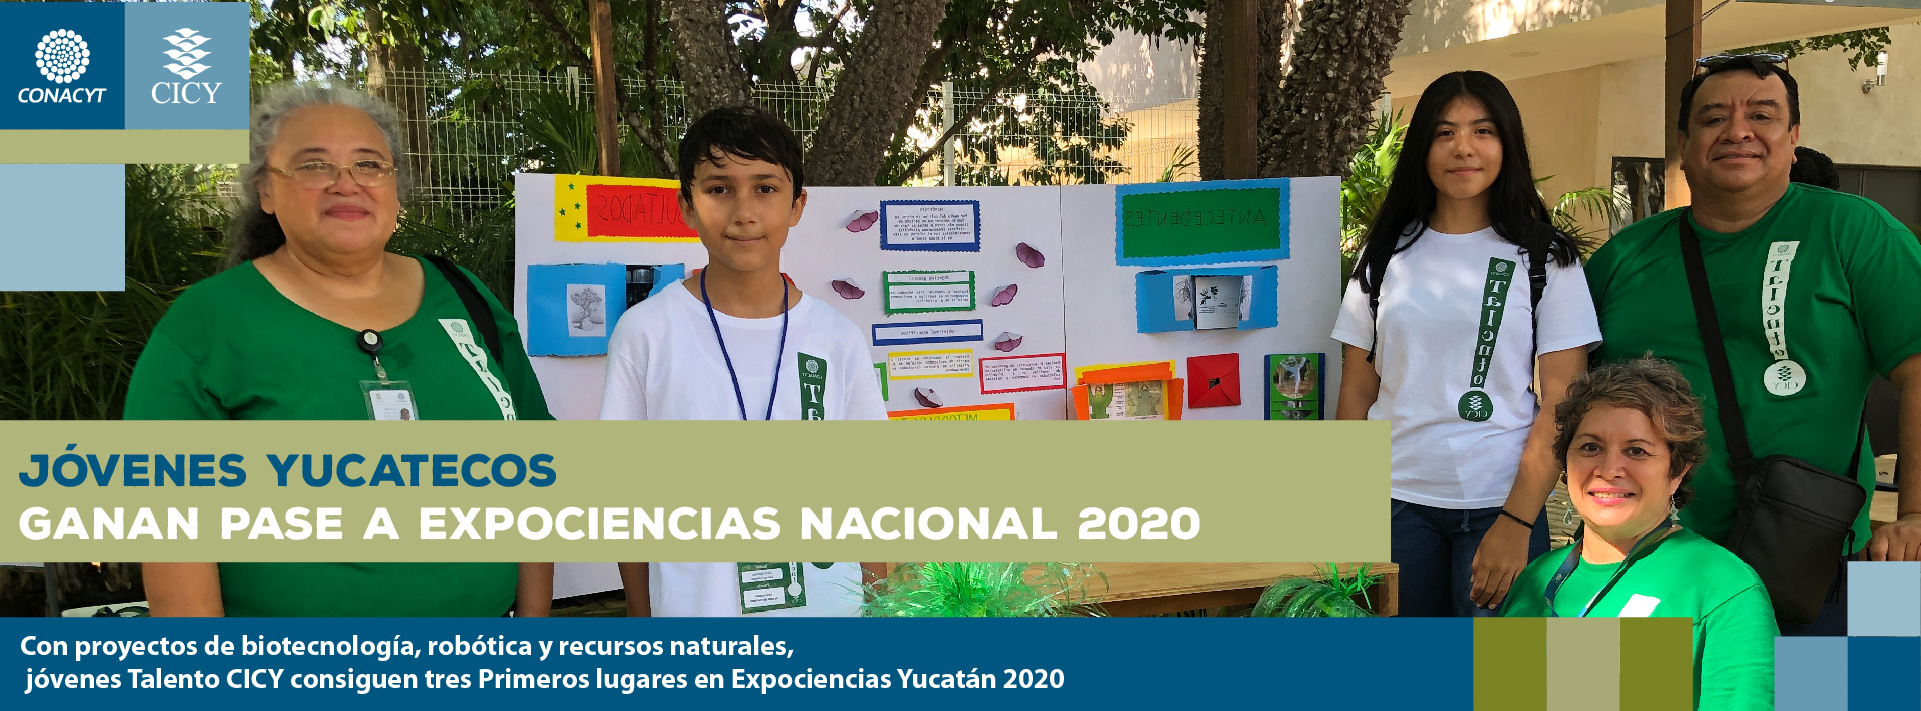 Jóvenes yucatecos ganan pase a Expociencias Nacional 2020